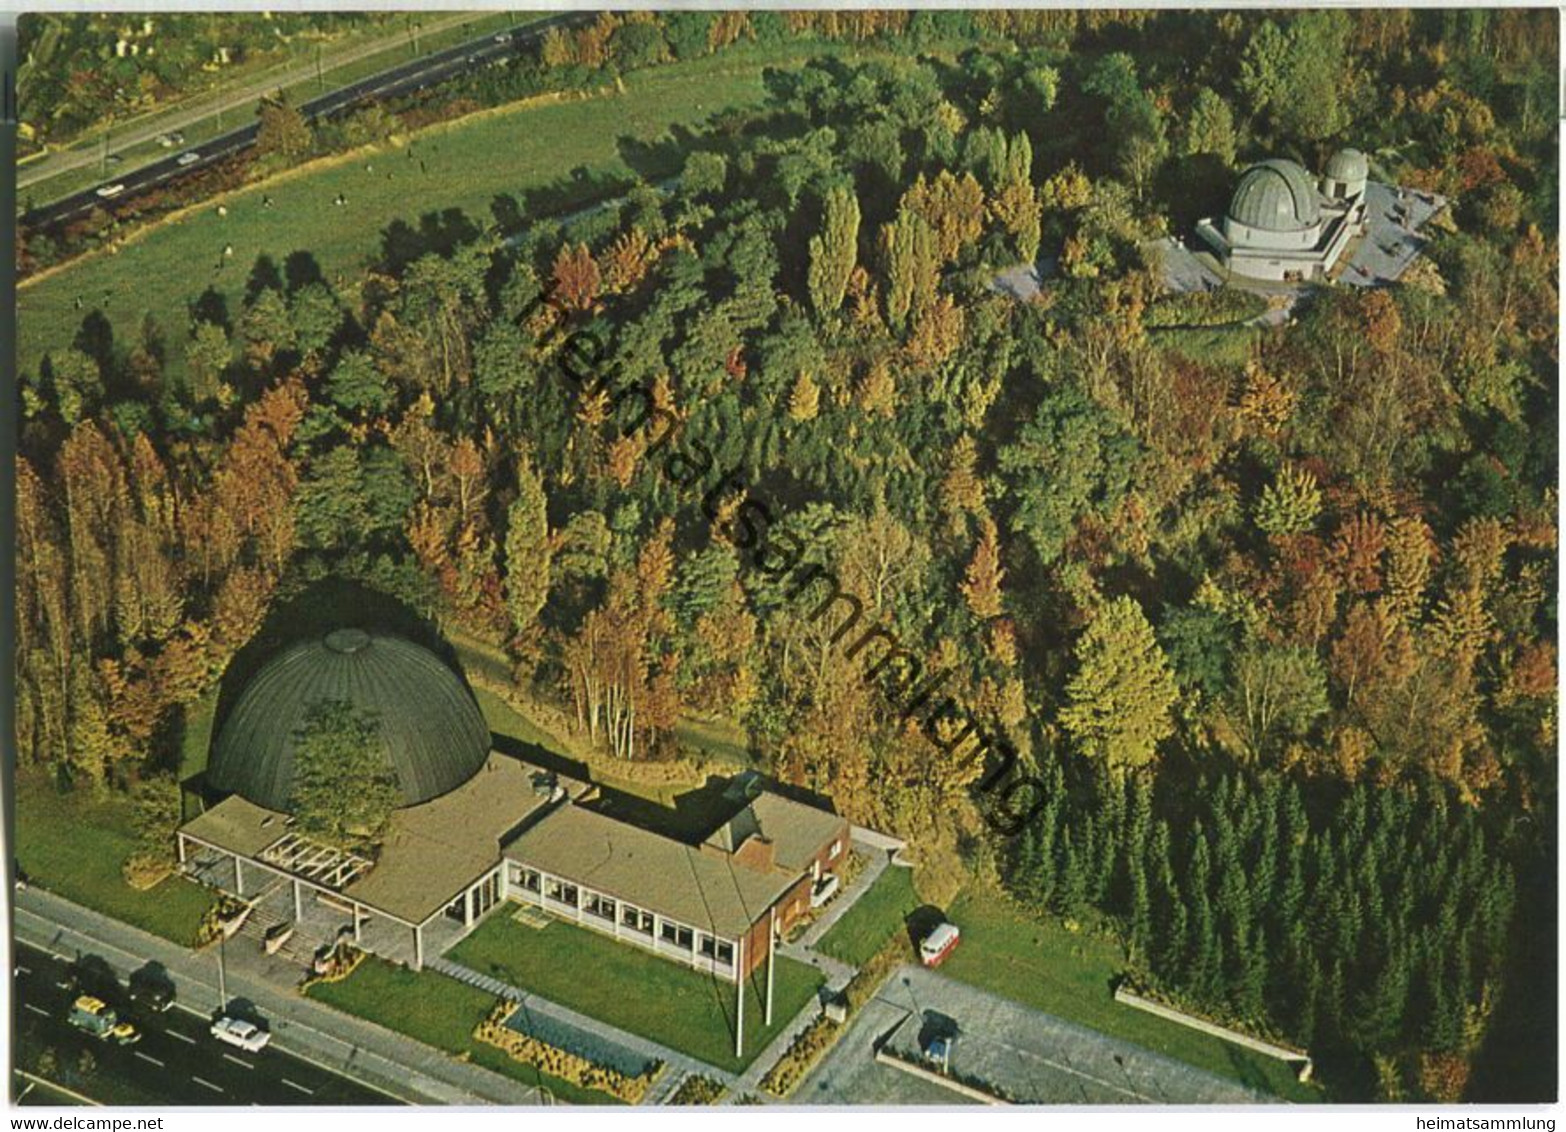 ZEISS-Planetarium Und Wilhelm-Foerster-Sternwarte Am Insulaner - Foto-AK - Luftaufnahme - Schoeneberg